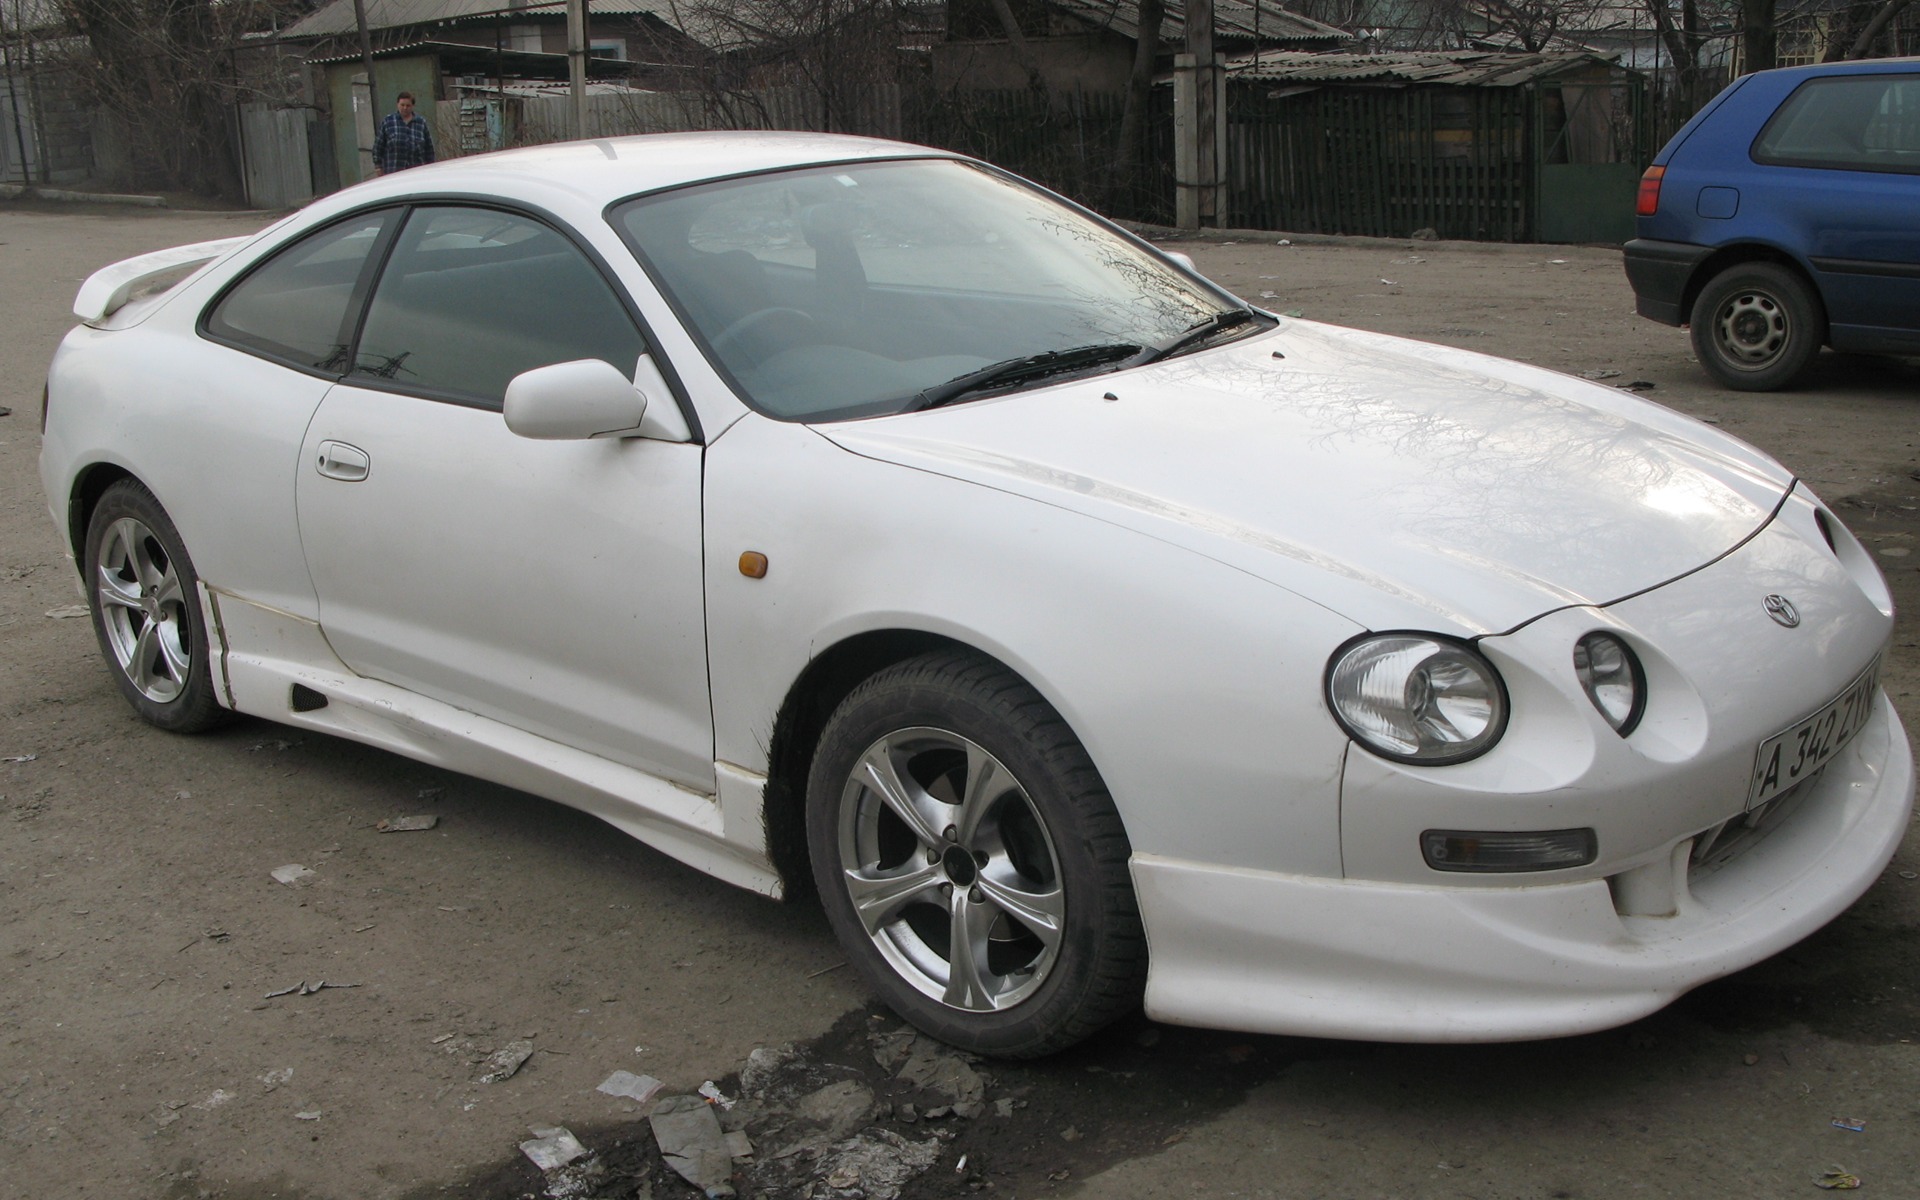   Toyota Celica 20 1998 